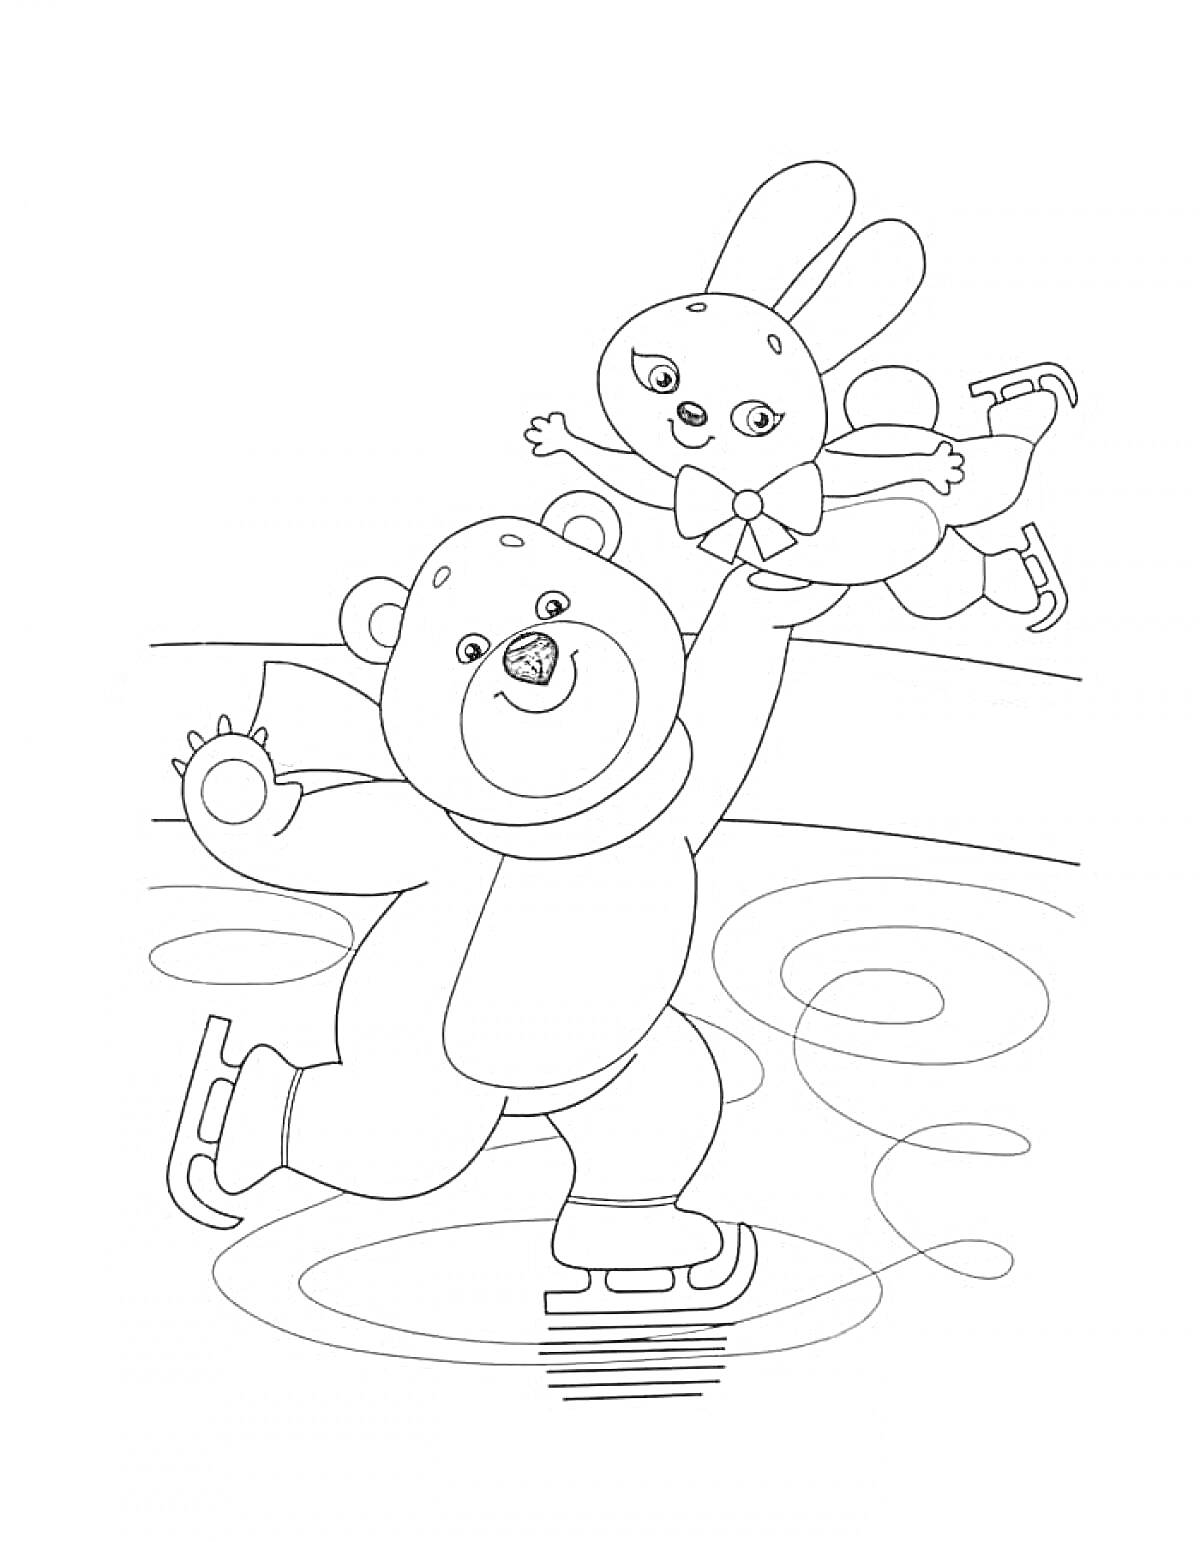 Медведь и заяц катаются на коньках на катке